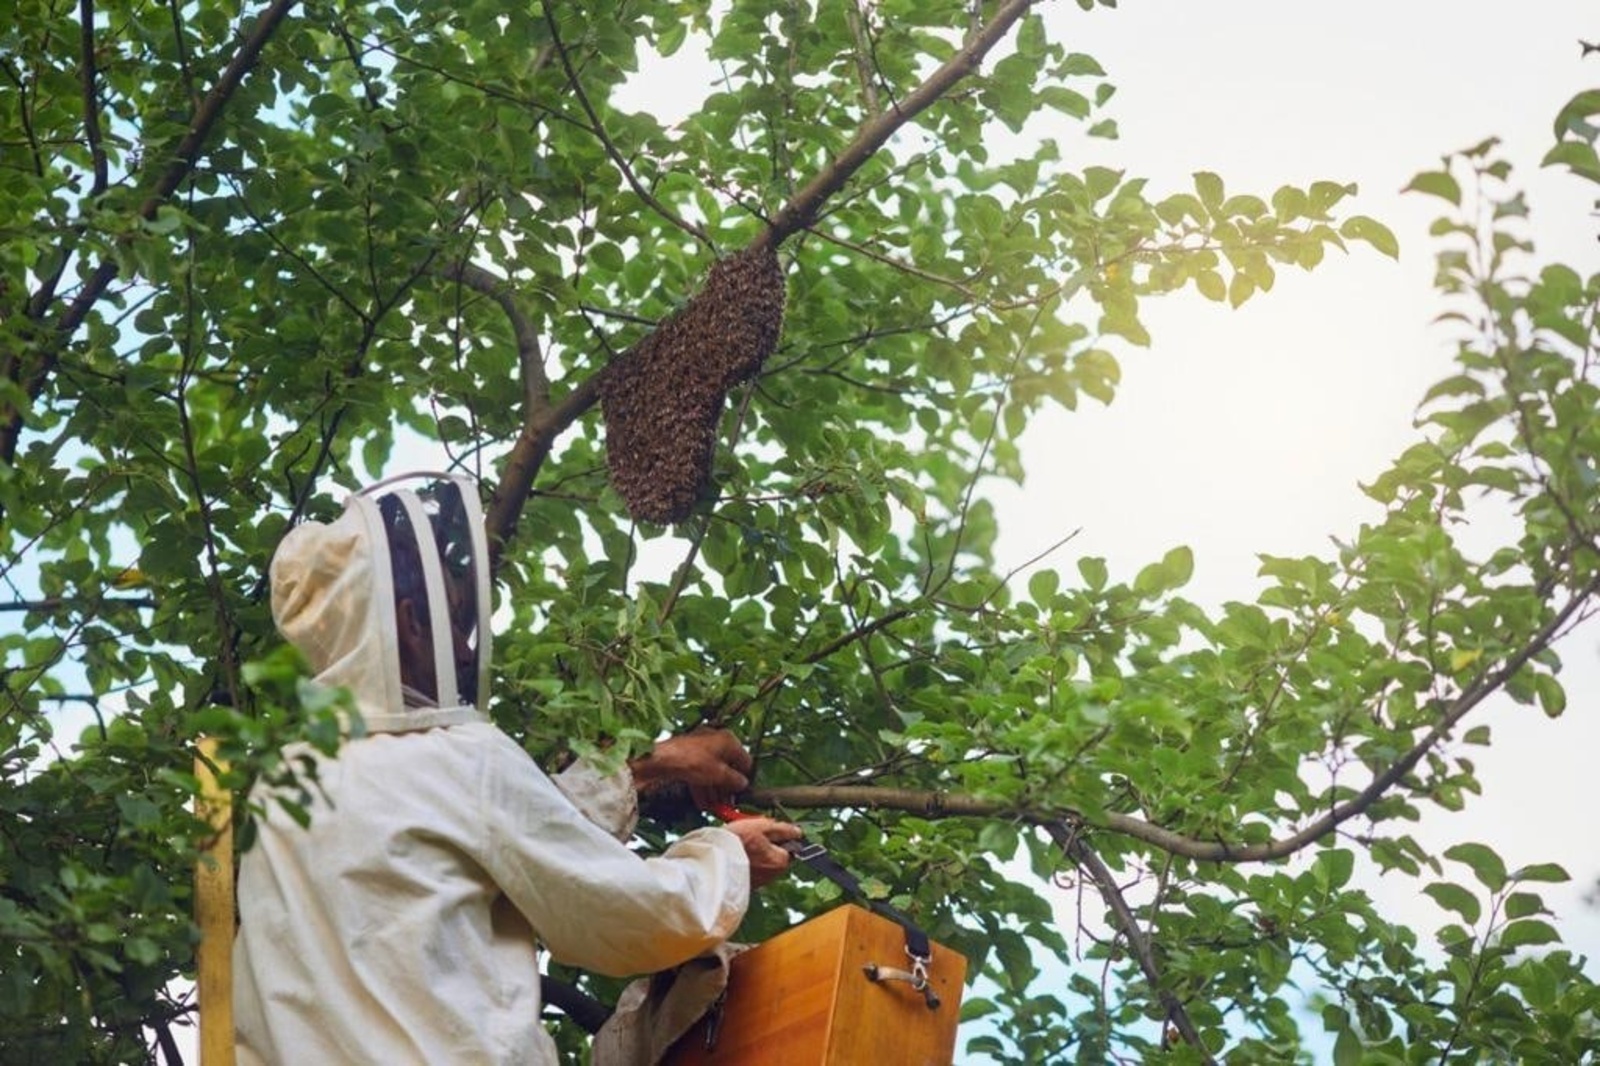 Башкирия - единственное место на Земле, где бортевое пчеловодство сохранилось как промысел в первозданном виде